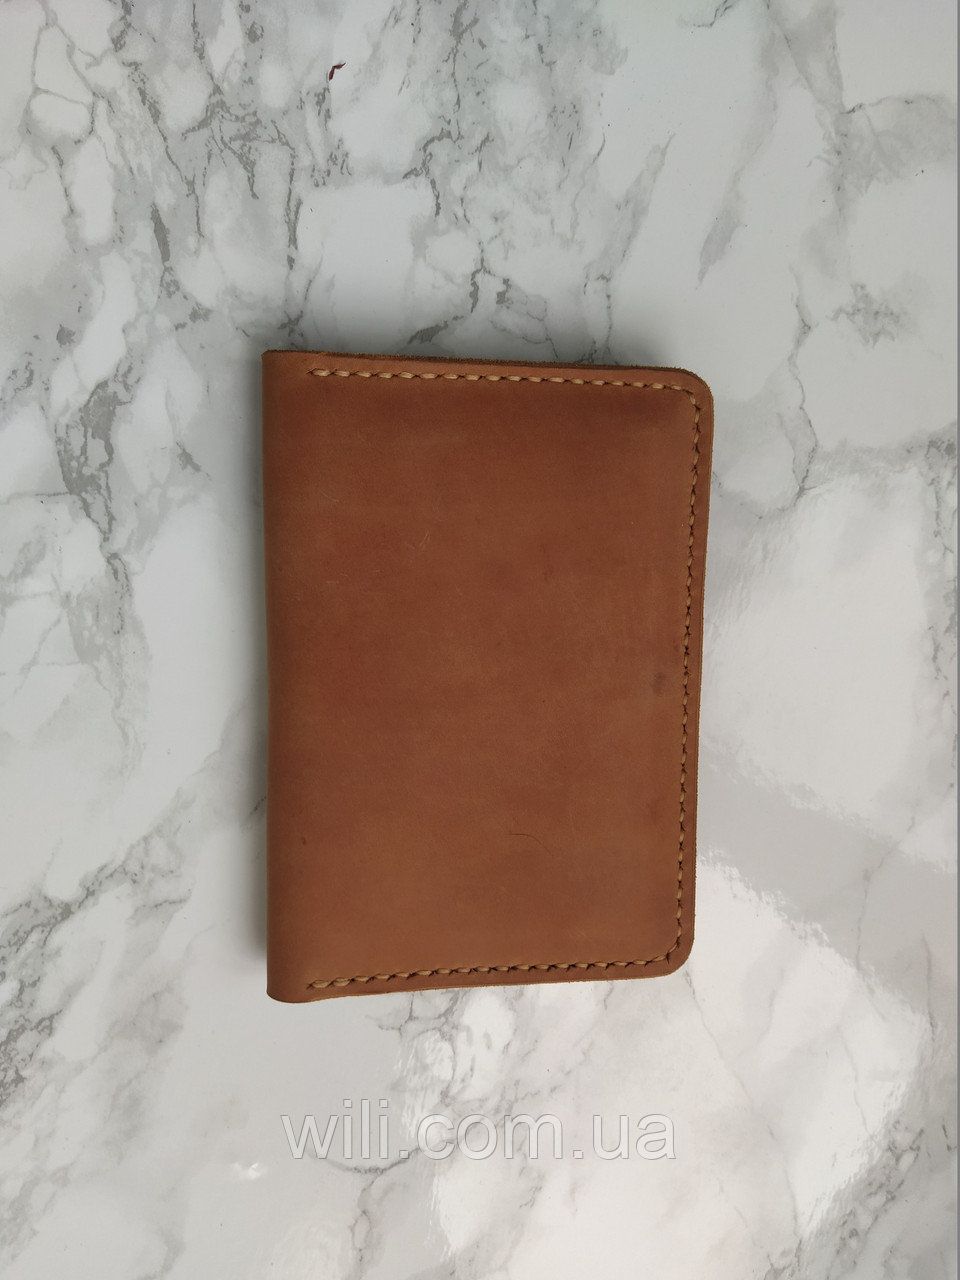 Кожаный кошелек-обложка для паспорта с гравировкой "Обложка"